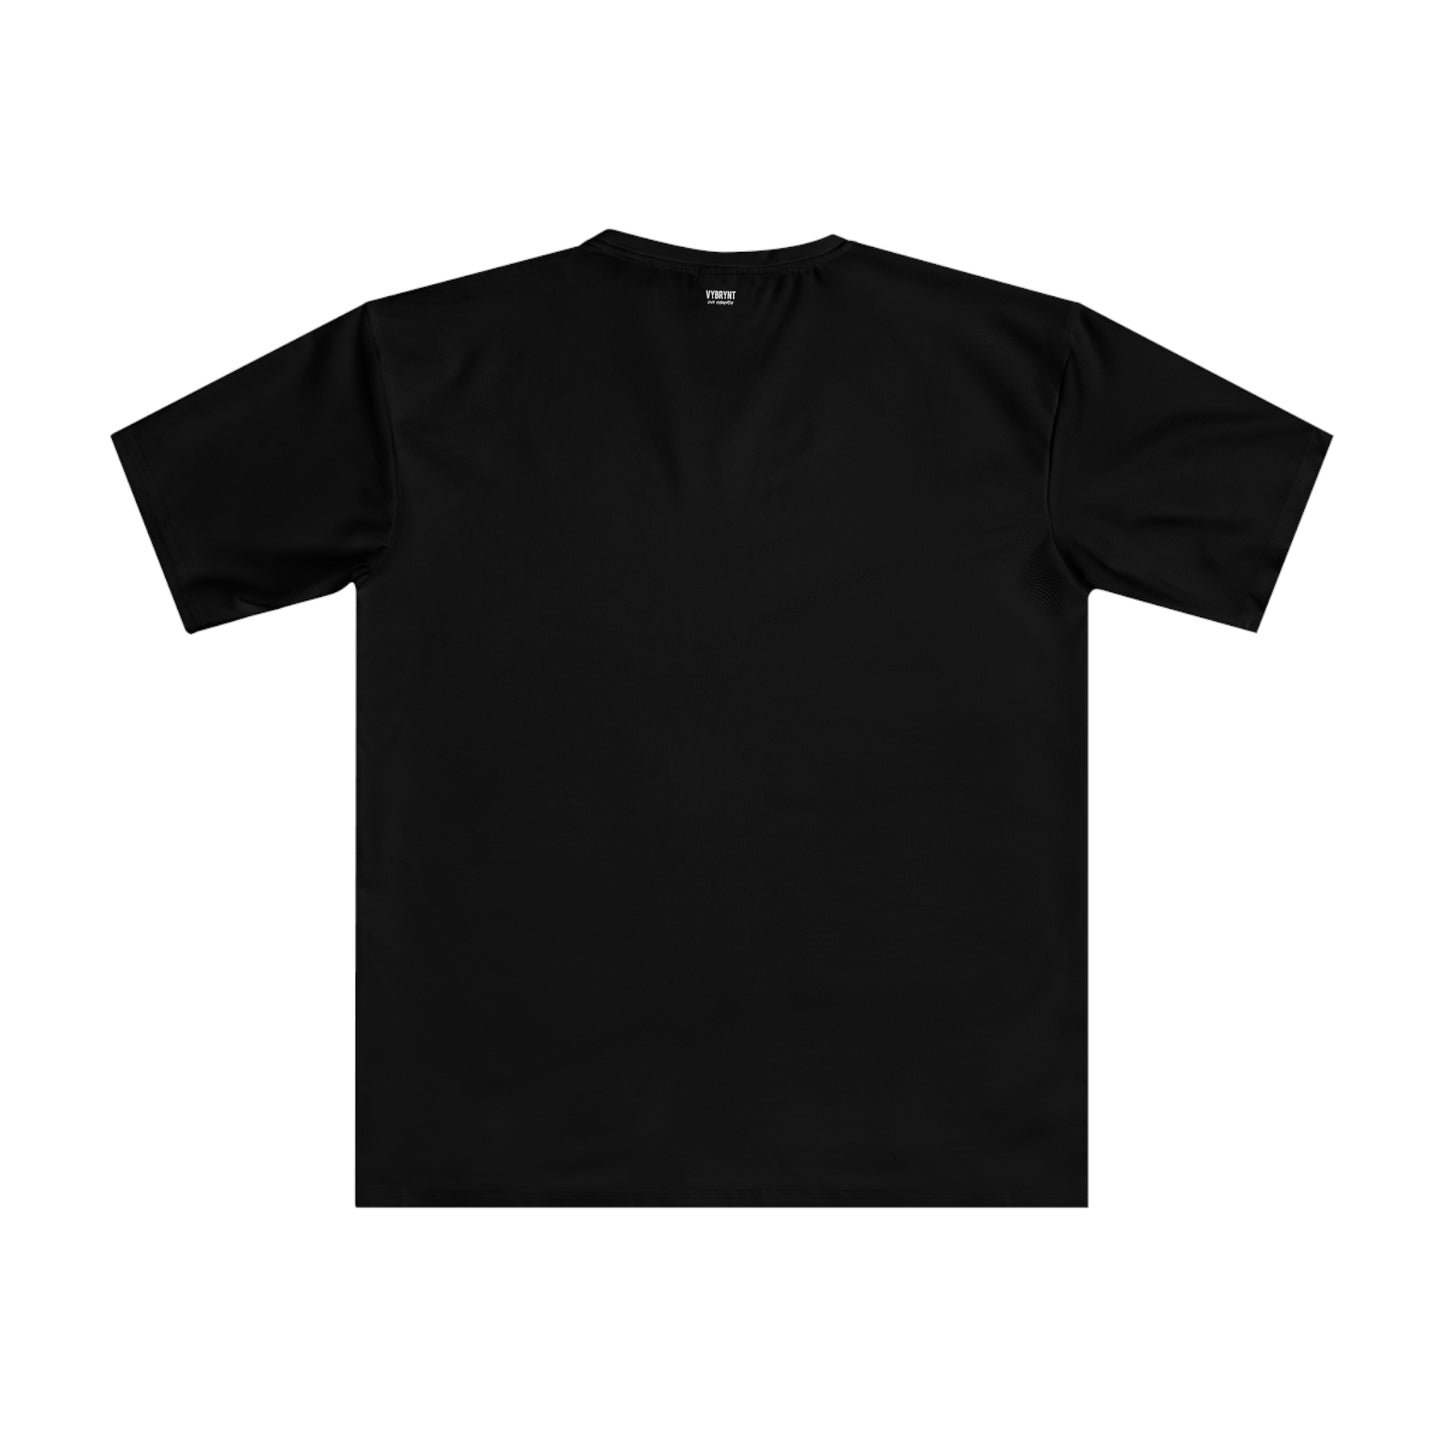 Heartfelt Mantra Men's Black T-shirt